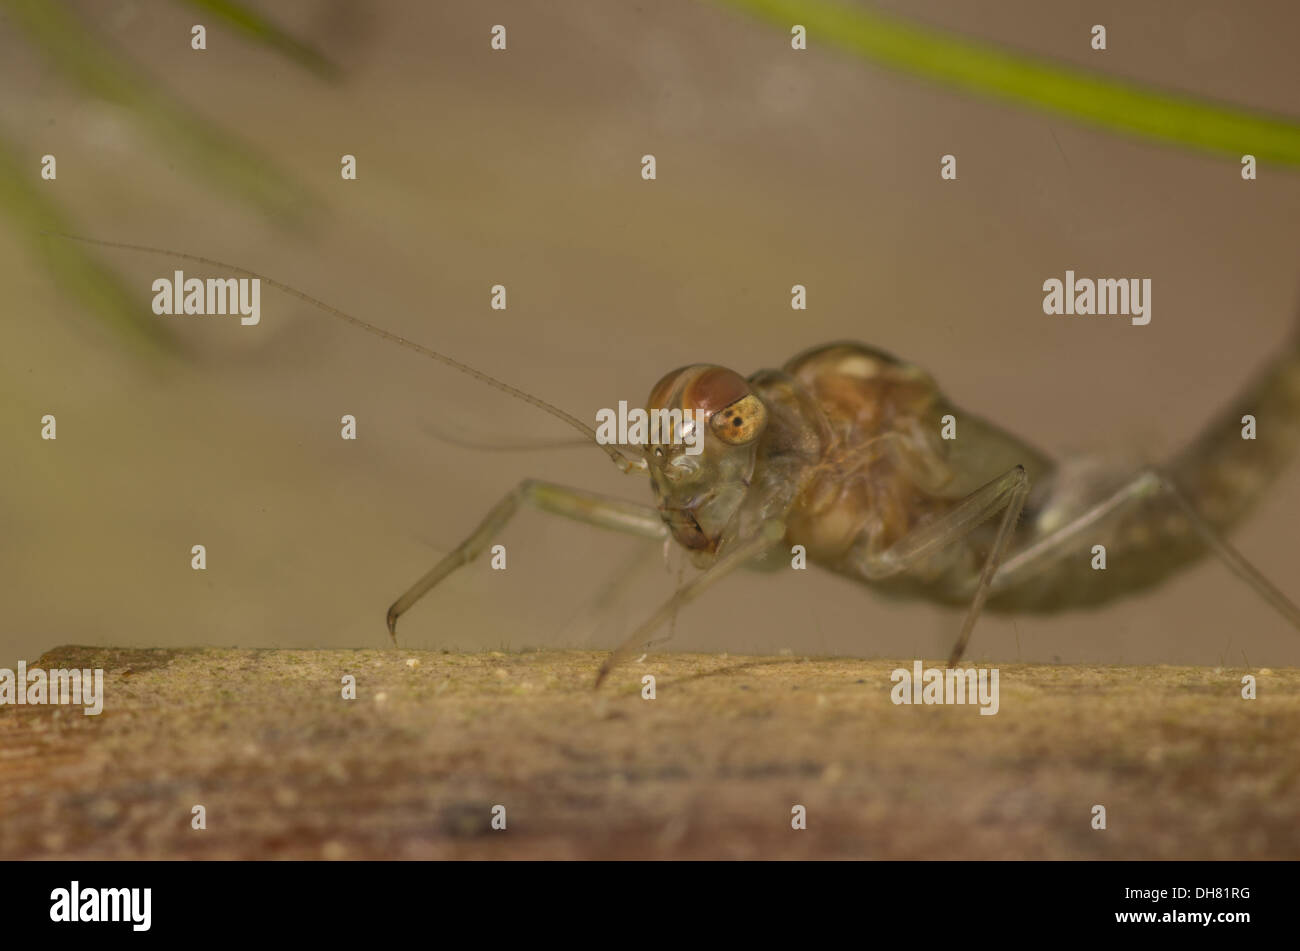 Pond olive mayfly nymph larva sott'acqua. Preso in un acquario fotografico e restituito al wild illeso Foto Stock